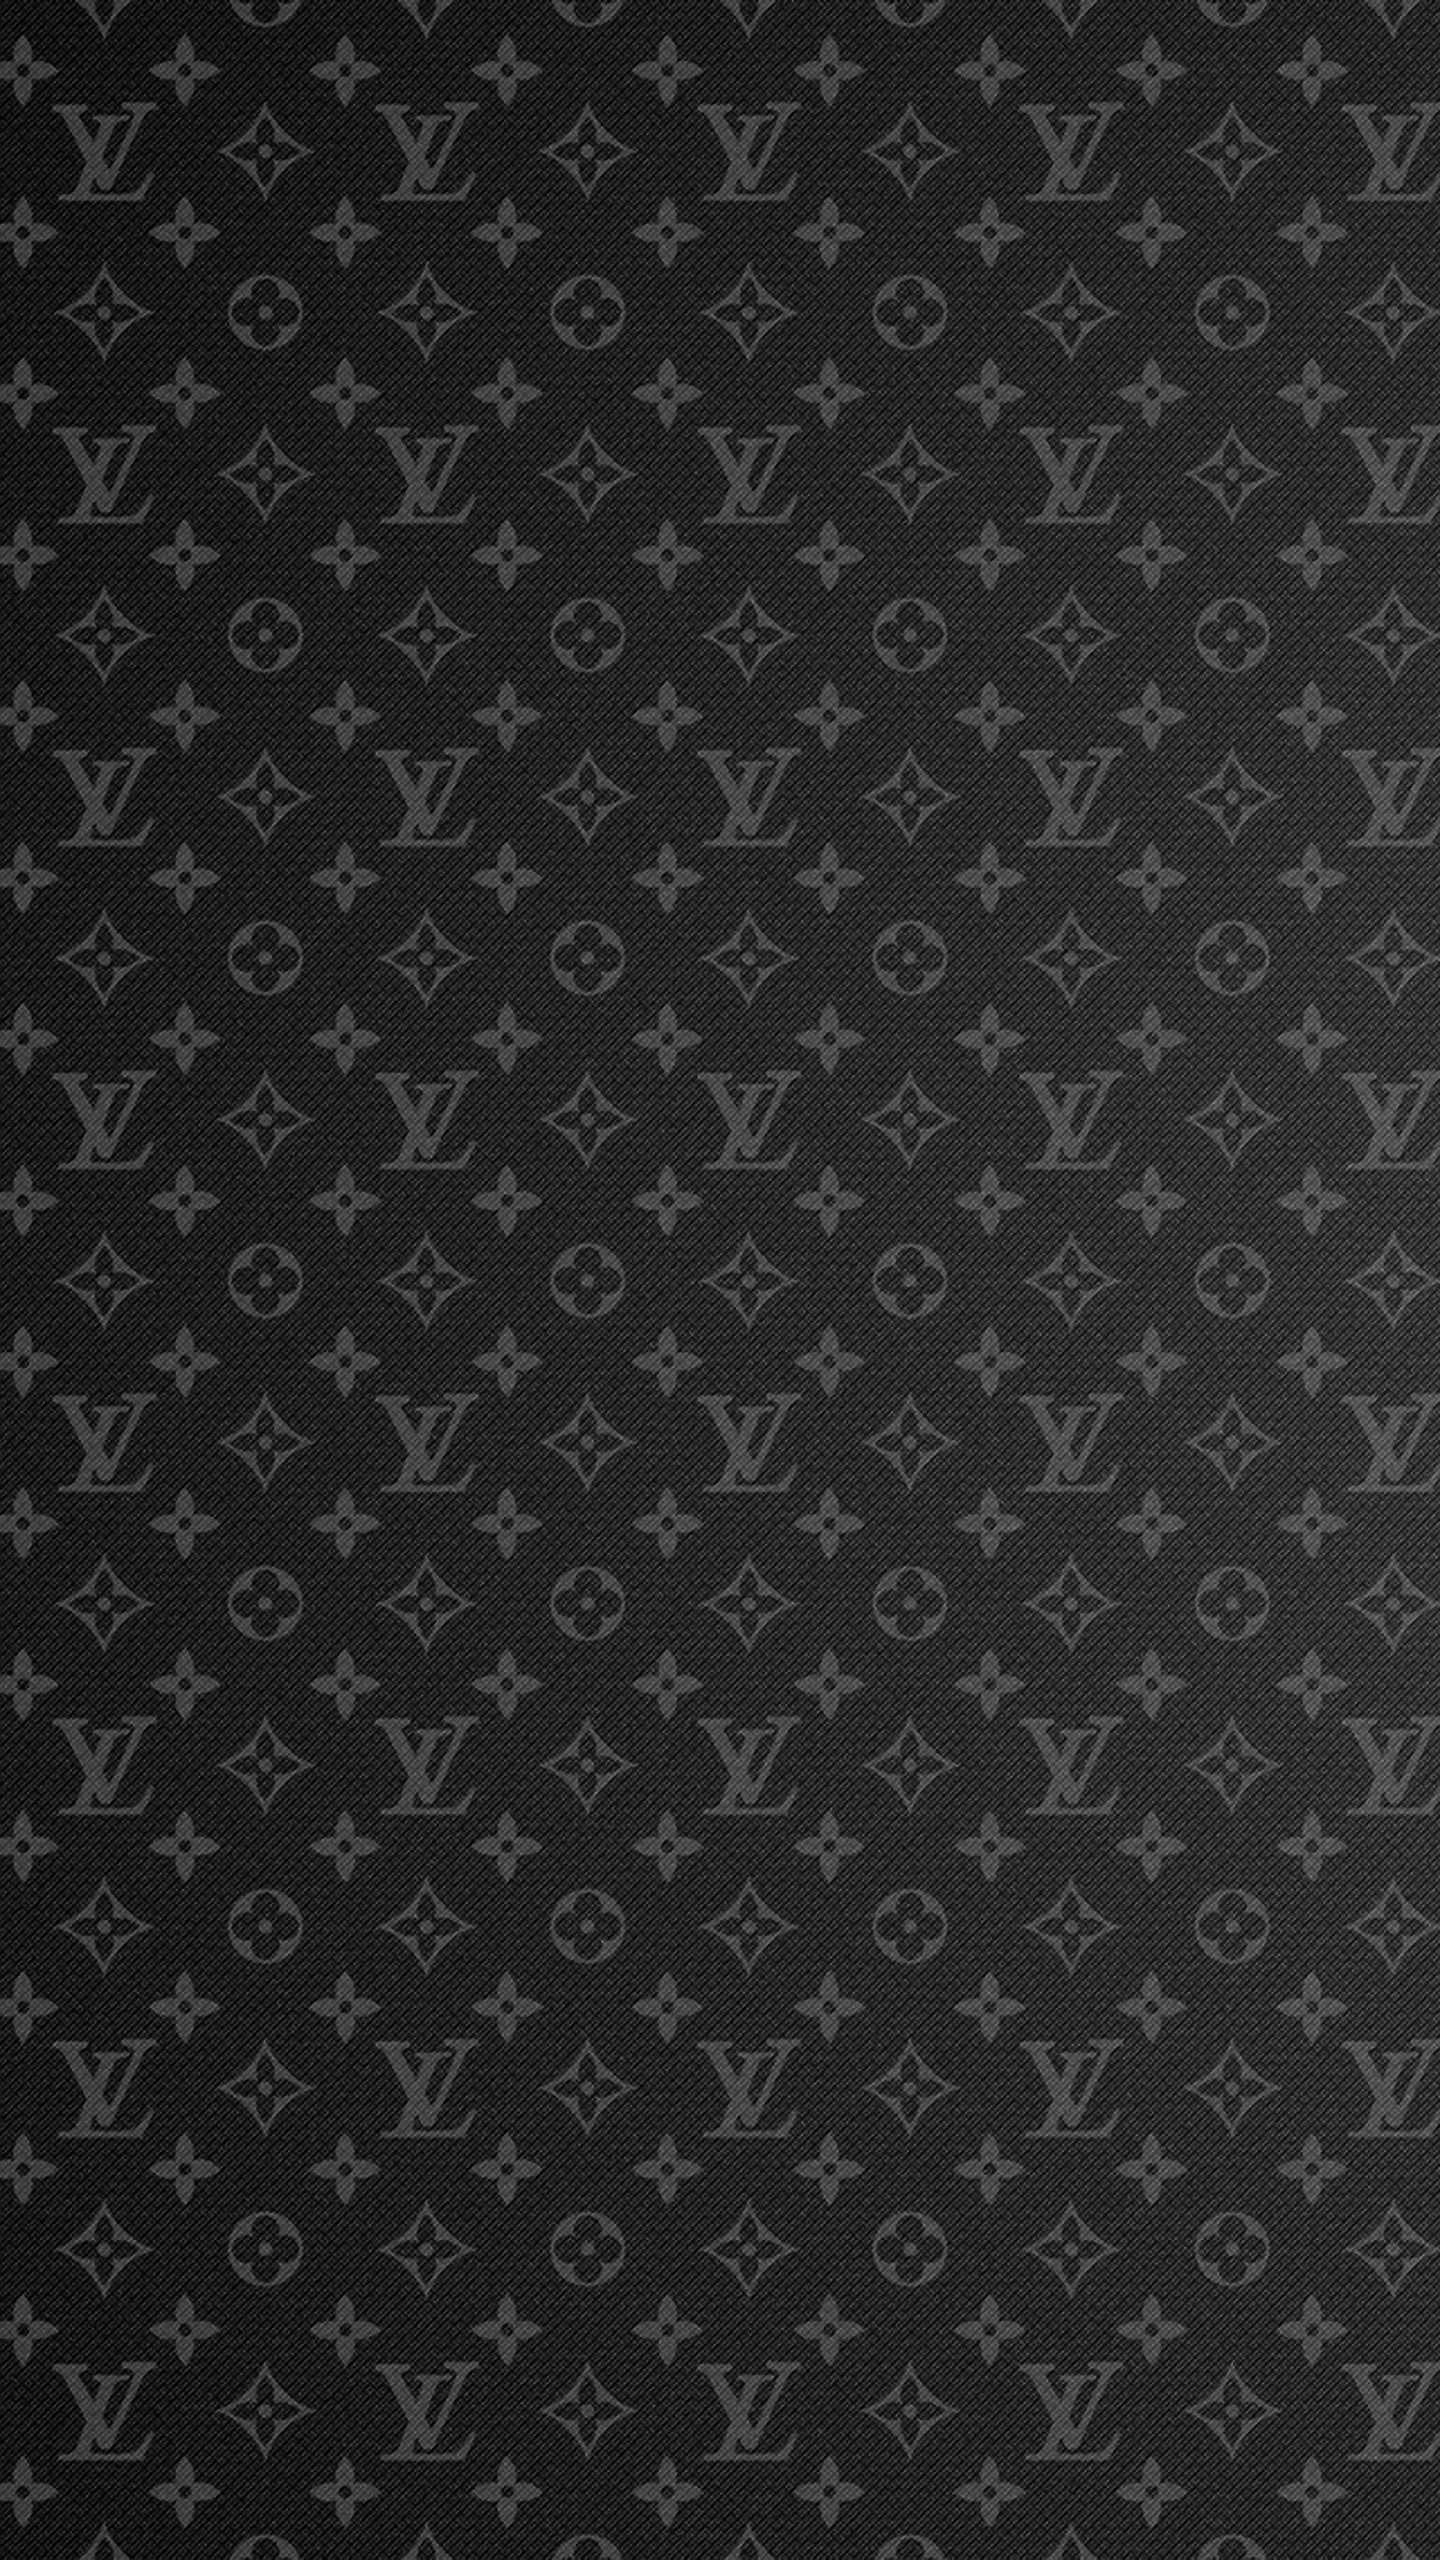 Lv Wallpaper - iXpap